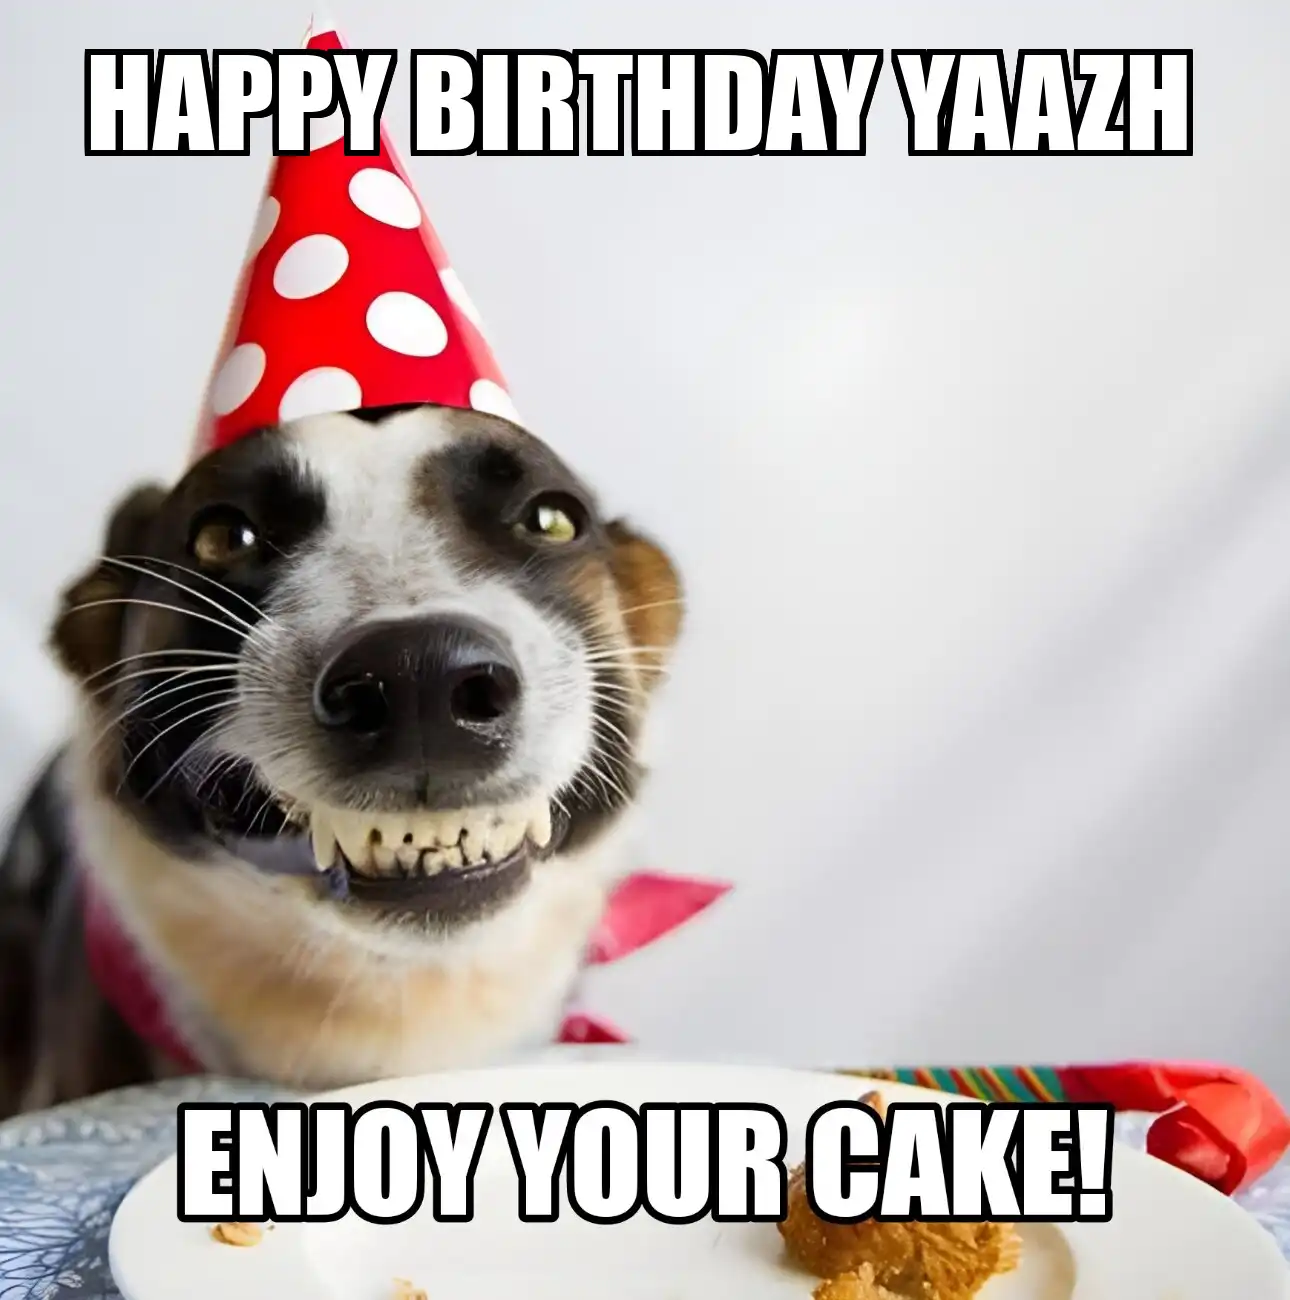 Happy Birthday Yaazh Enjoy Your Cake Dog Meme